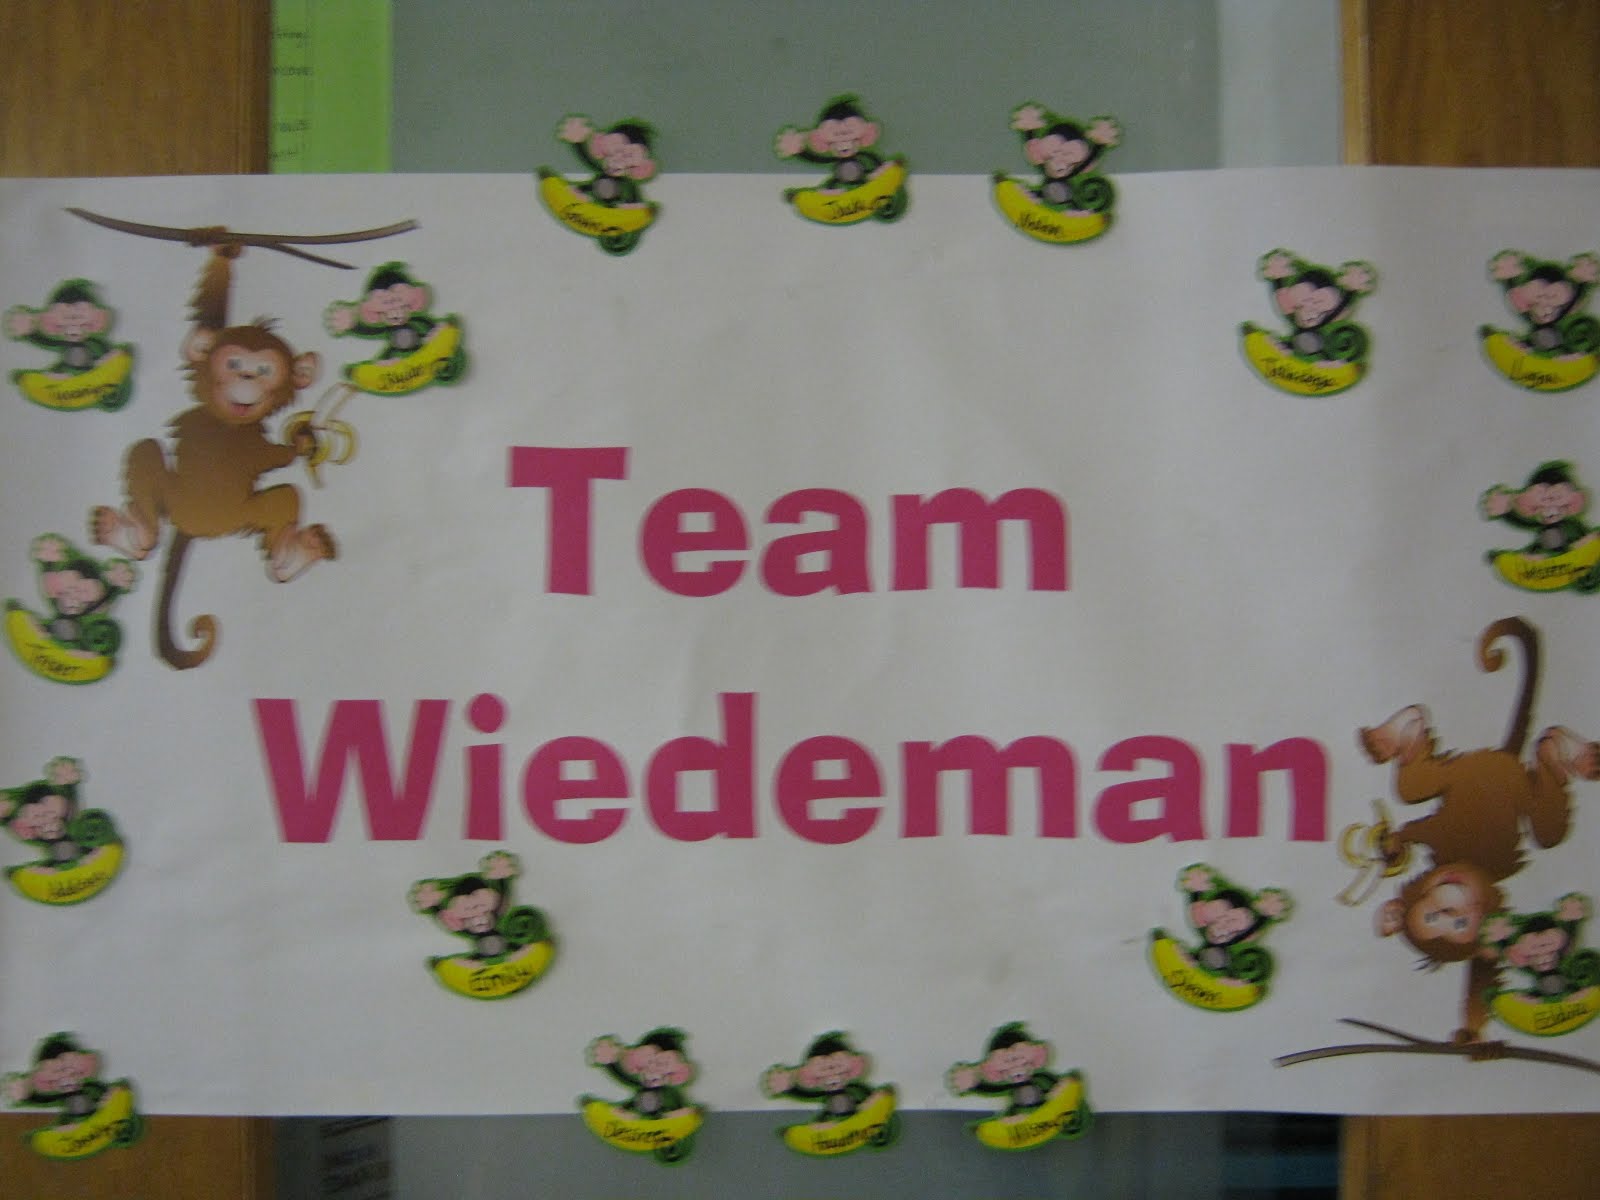 Team Wiedeman